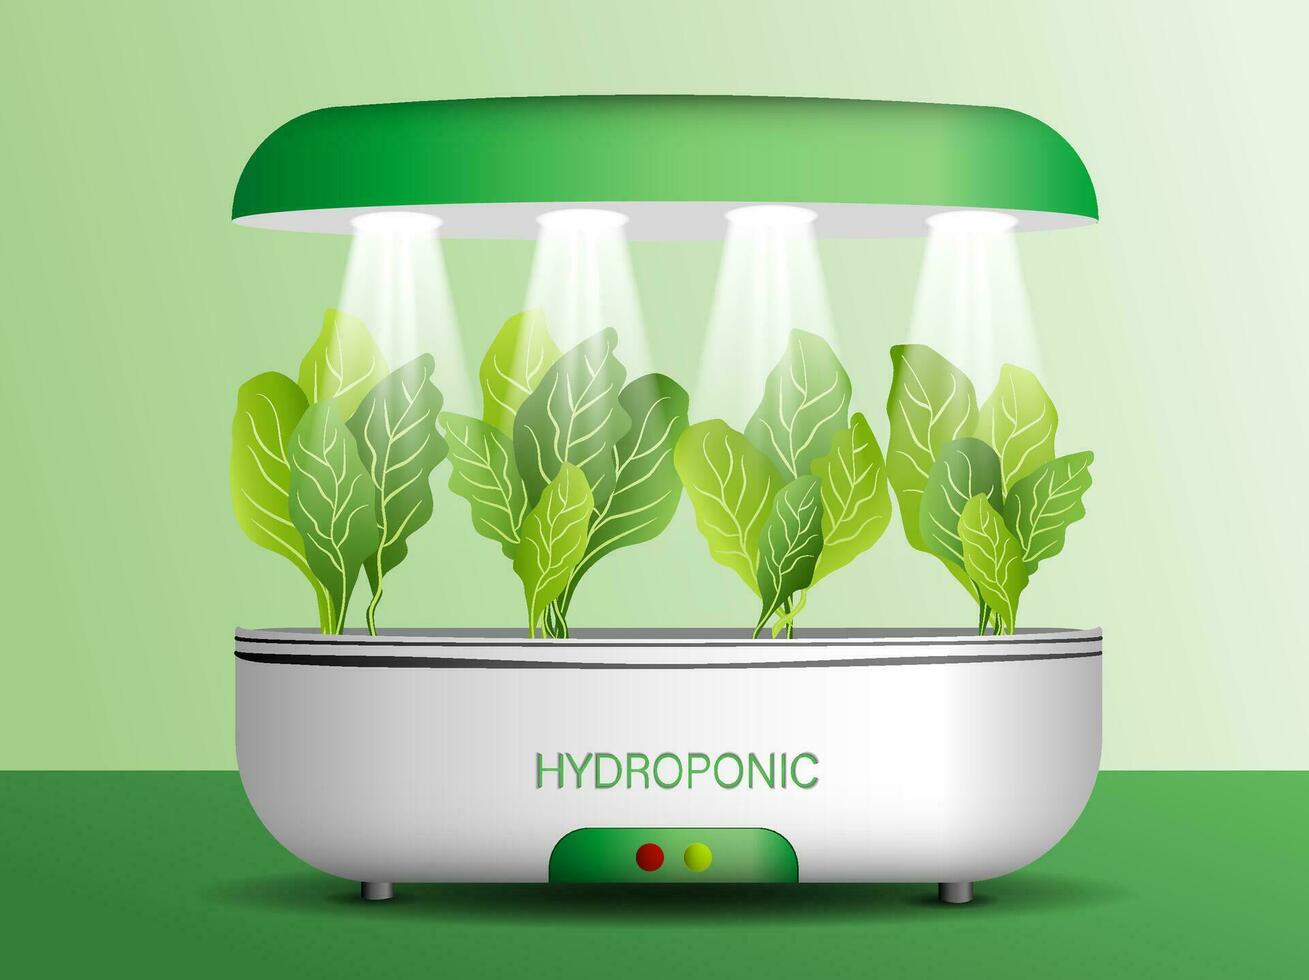 tragbar hydroponisch aeroponic System zum umweltfreundlich wachsend von Grün Kopfsalat, Gemüse und Kräuter. mit automatisch Bewässerung System und Phyto Beleuchtung vektor